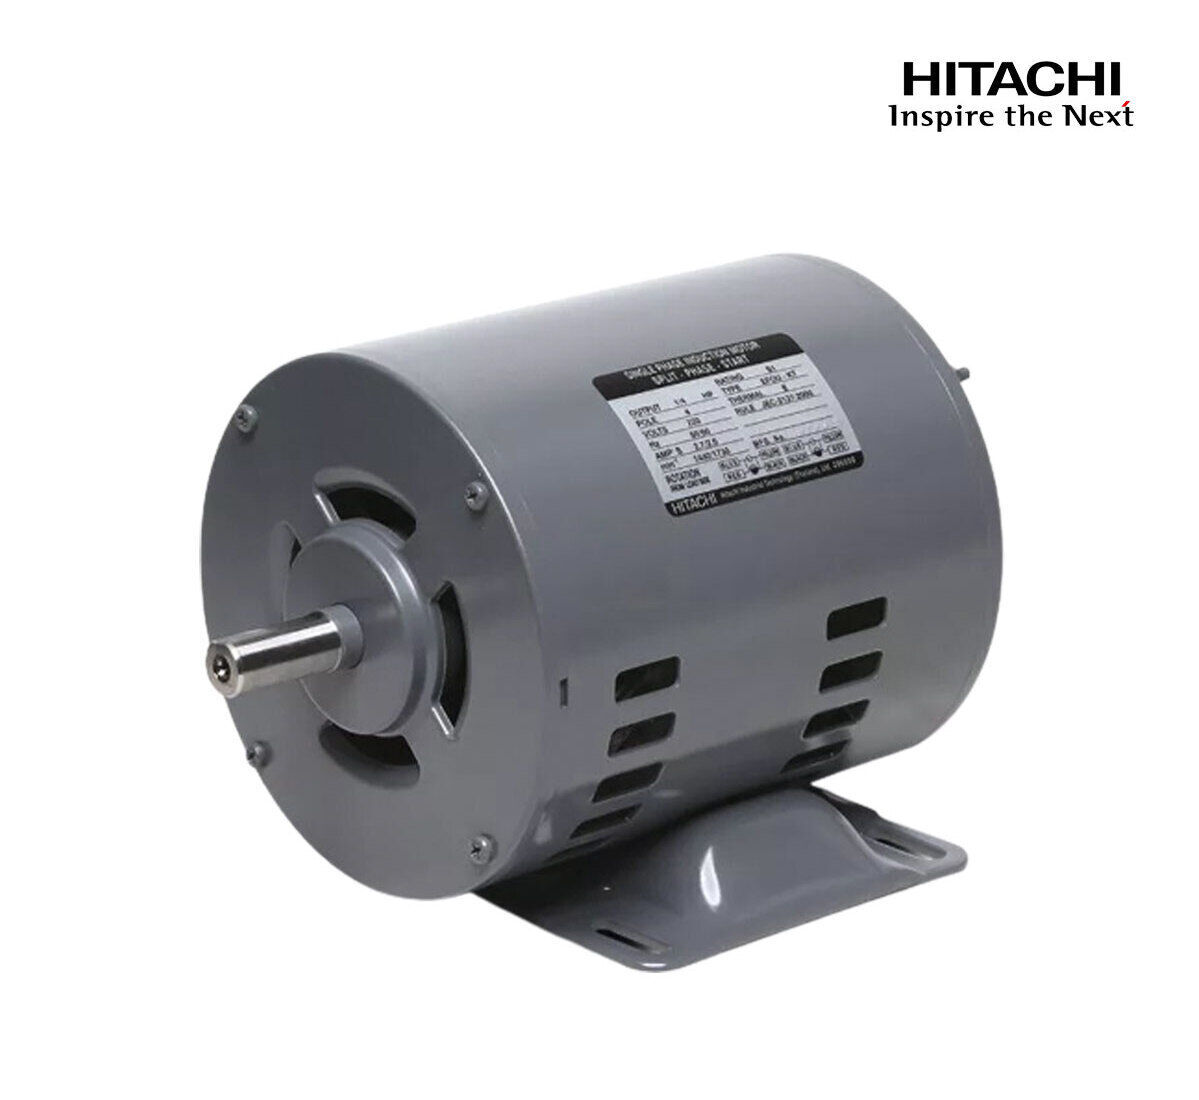 มอเตอร์ฮิตาชิของแท้ 100% HITACHI รุ่น EFOU-KT กำลัง 1/4 แรงม้า (0.18 KW.) กำลังไฟฟ้าที่ใช้ 220V ความเร็วรอบตัวเปล่า 1450 RPM แกนเพลามอเตอร์ 14 MM.รับประกัน 3 ปี มีของพร้อมจัดส่งทุกวัน